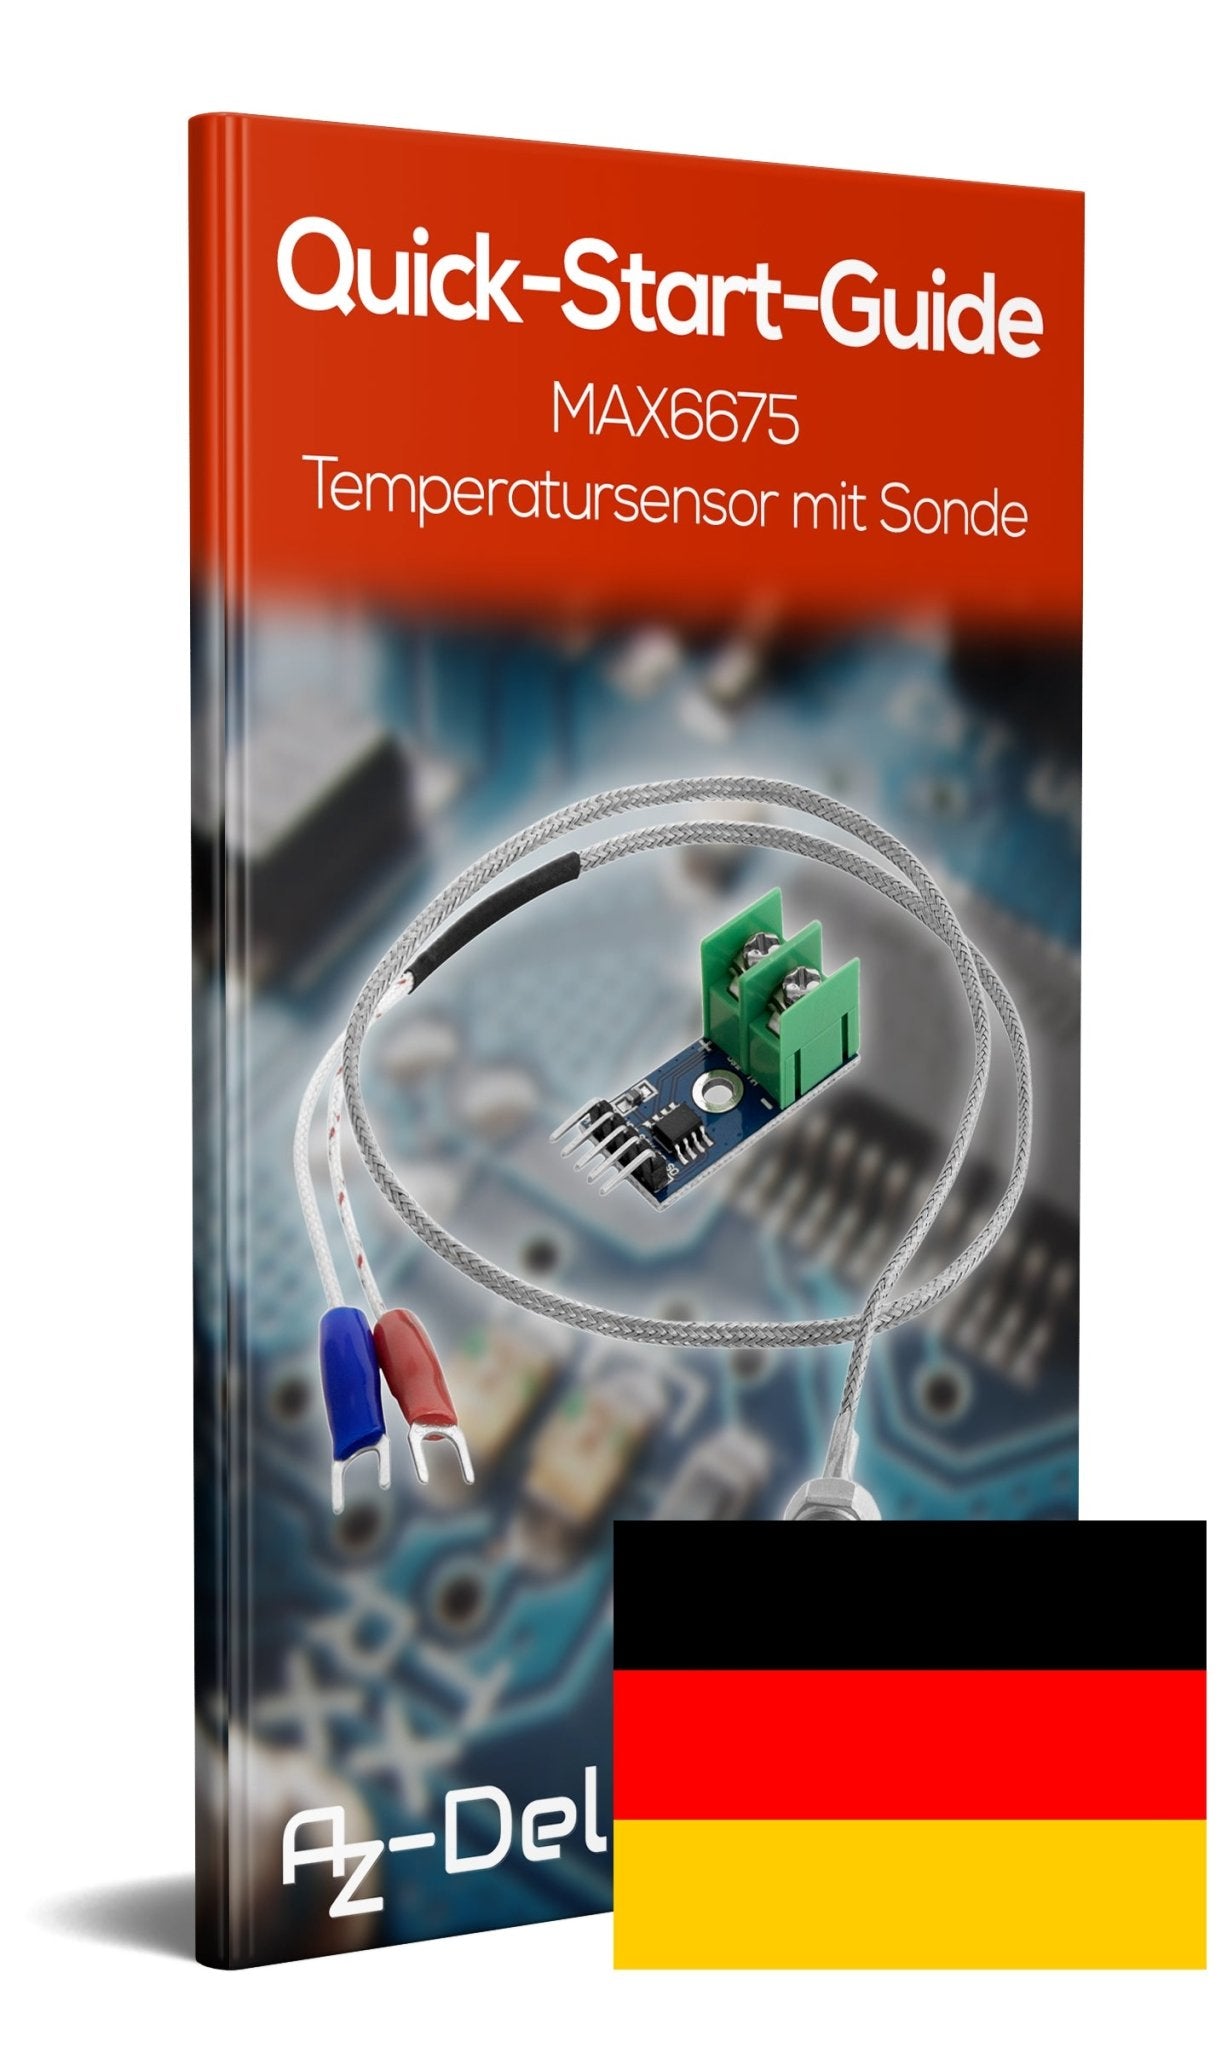 MAX6675 Temperatur Sensor mit Sonde K-Typ und Jumper Wire für Raspberry Pi - AZ-Delivery